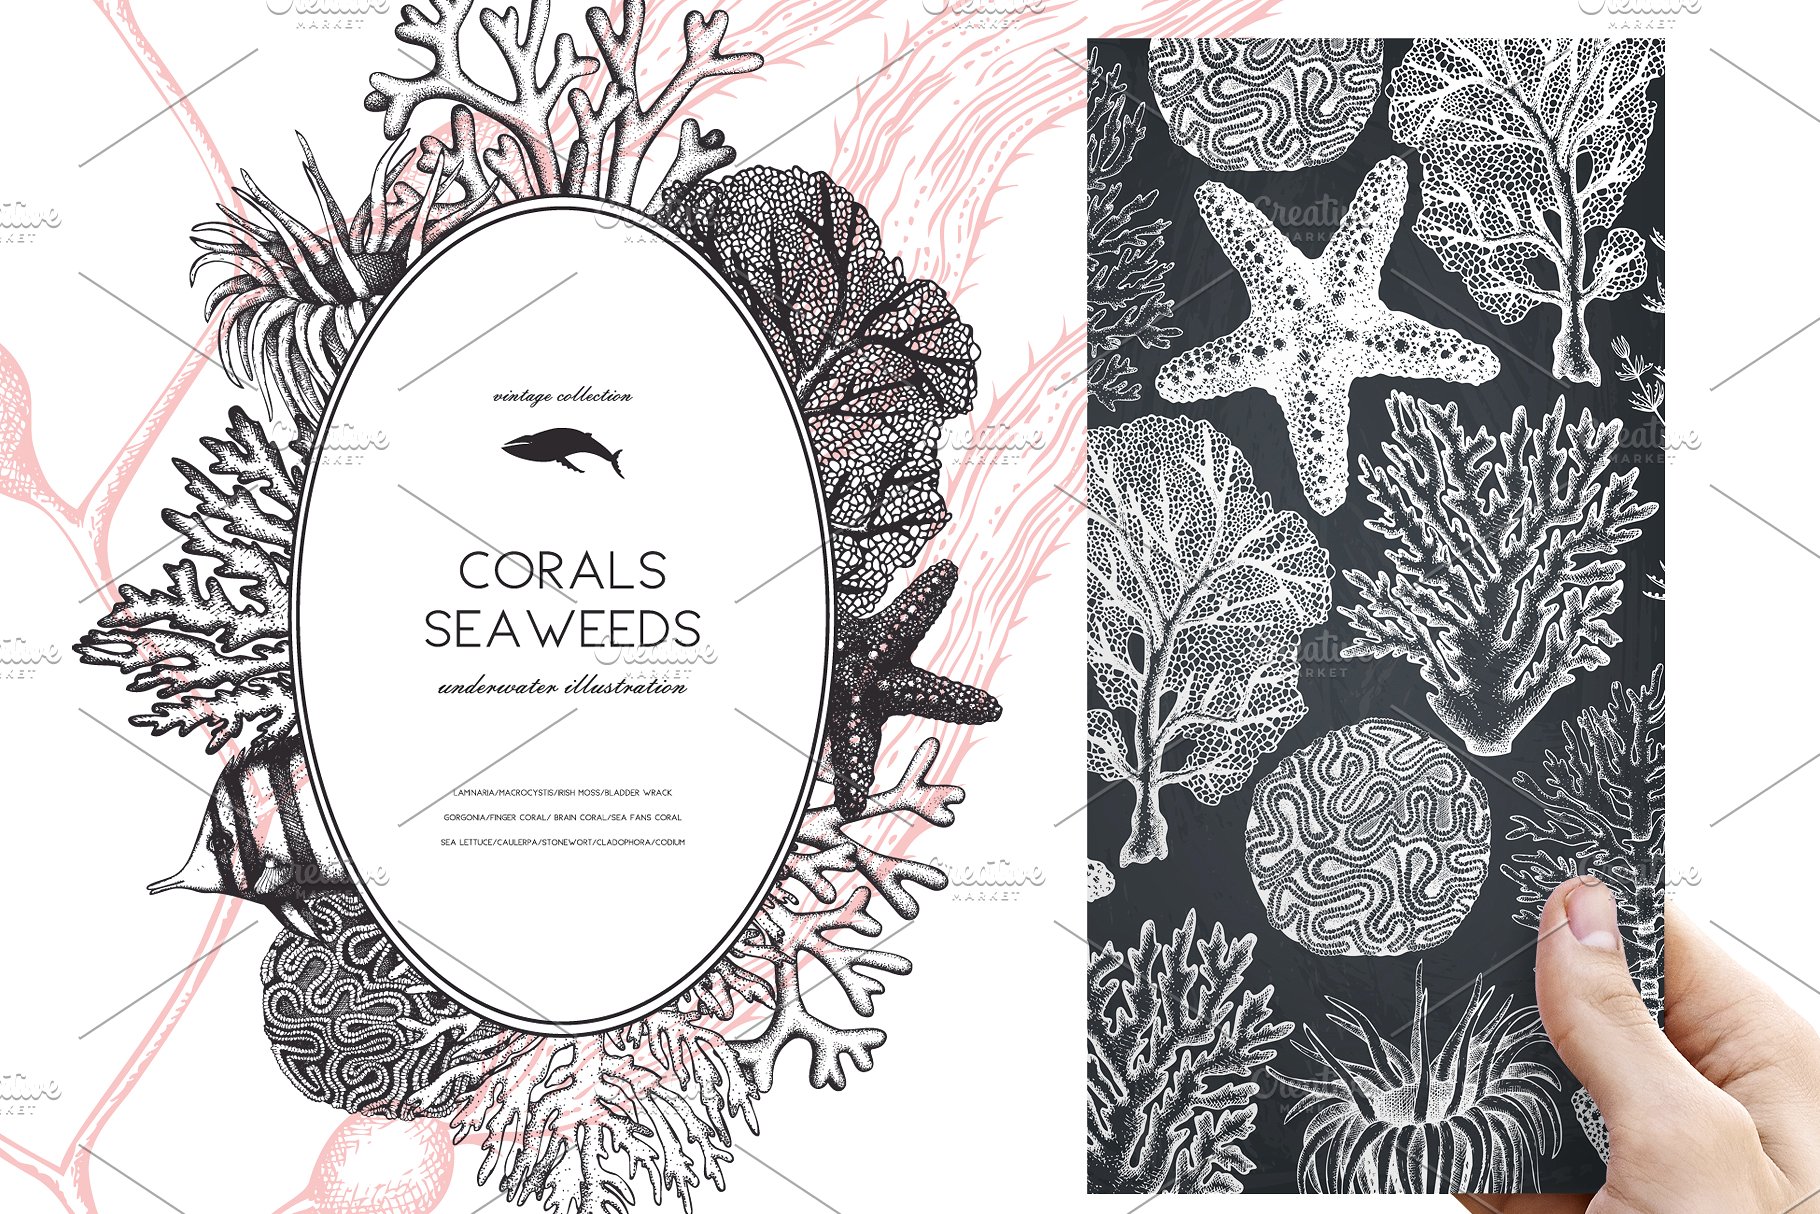 海藻珊瑚矢量插画合集 Vector Seaweeds & Corals Set插图(6)